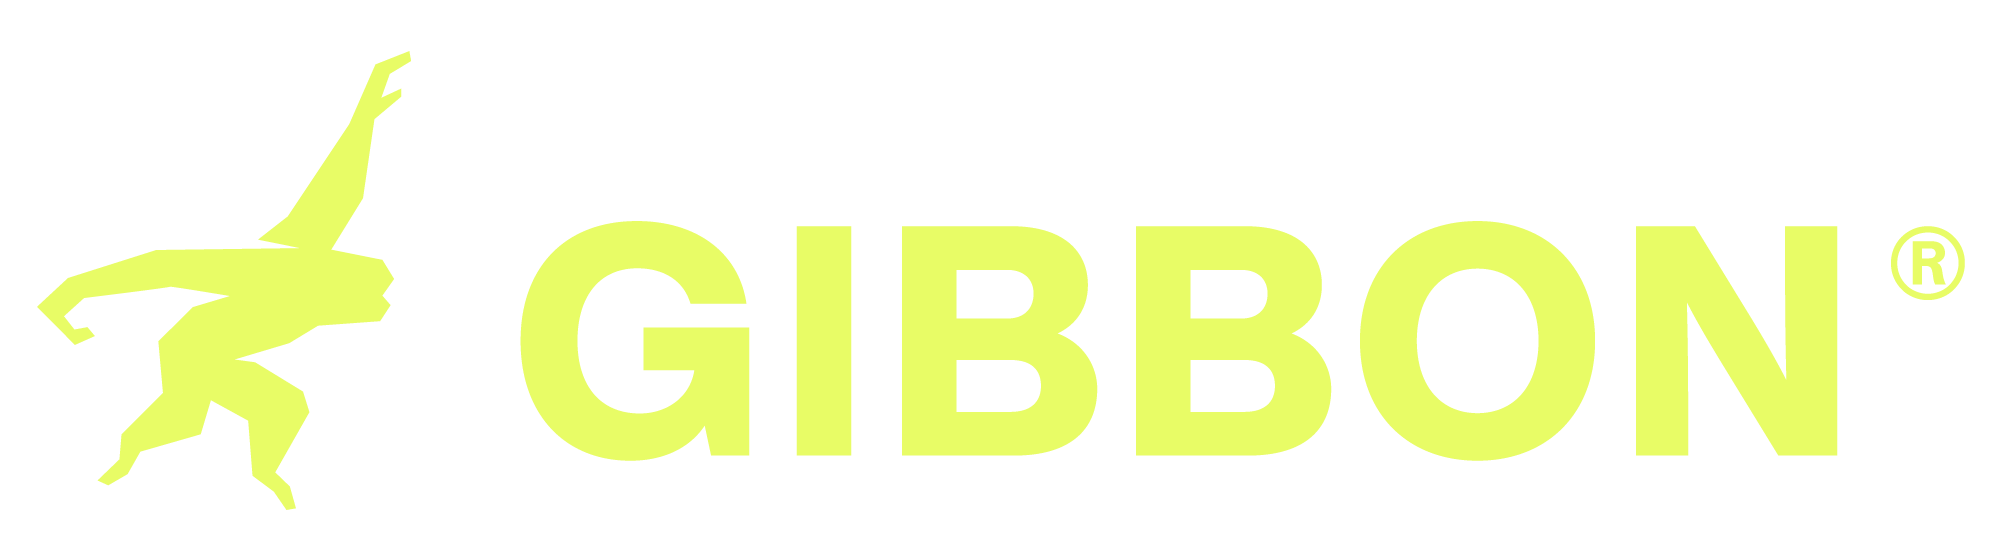 Gibbon_Reinzeichnung_Logo_horizontal_yellow-1